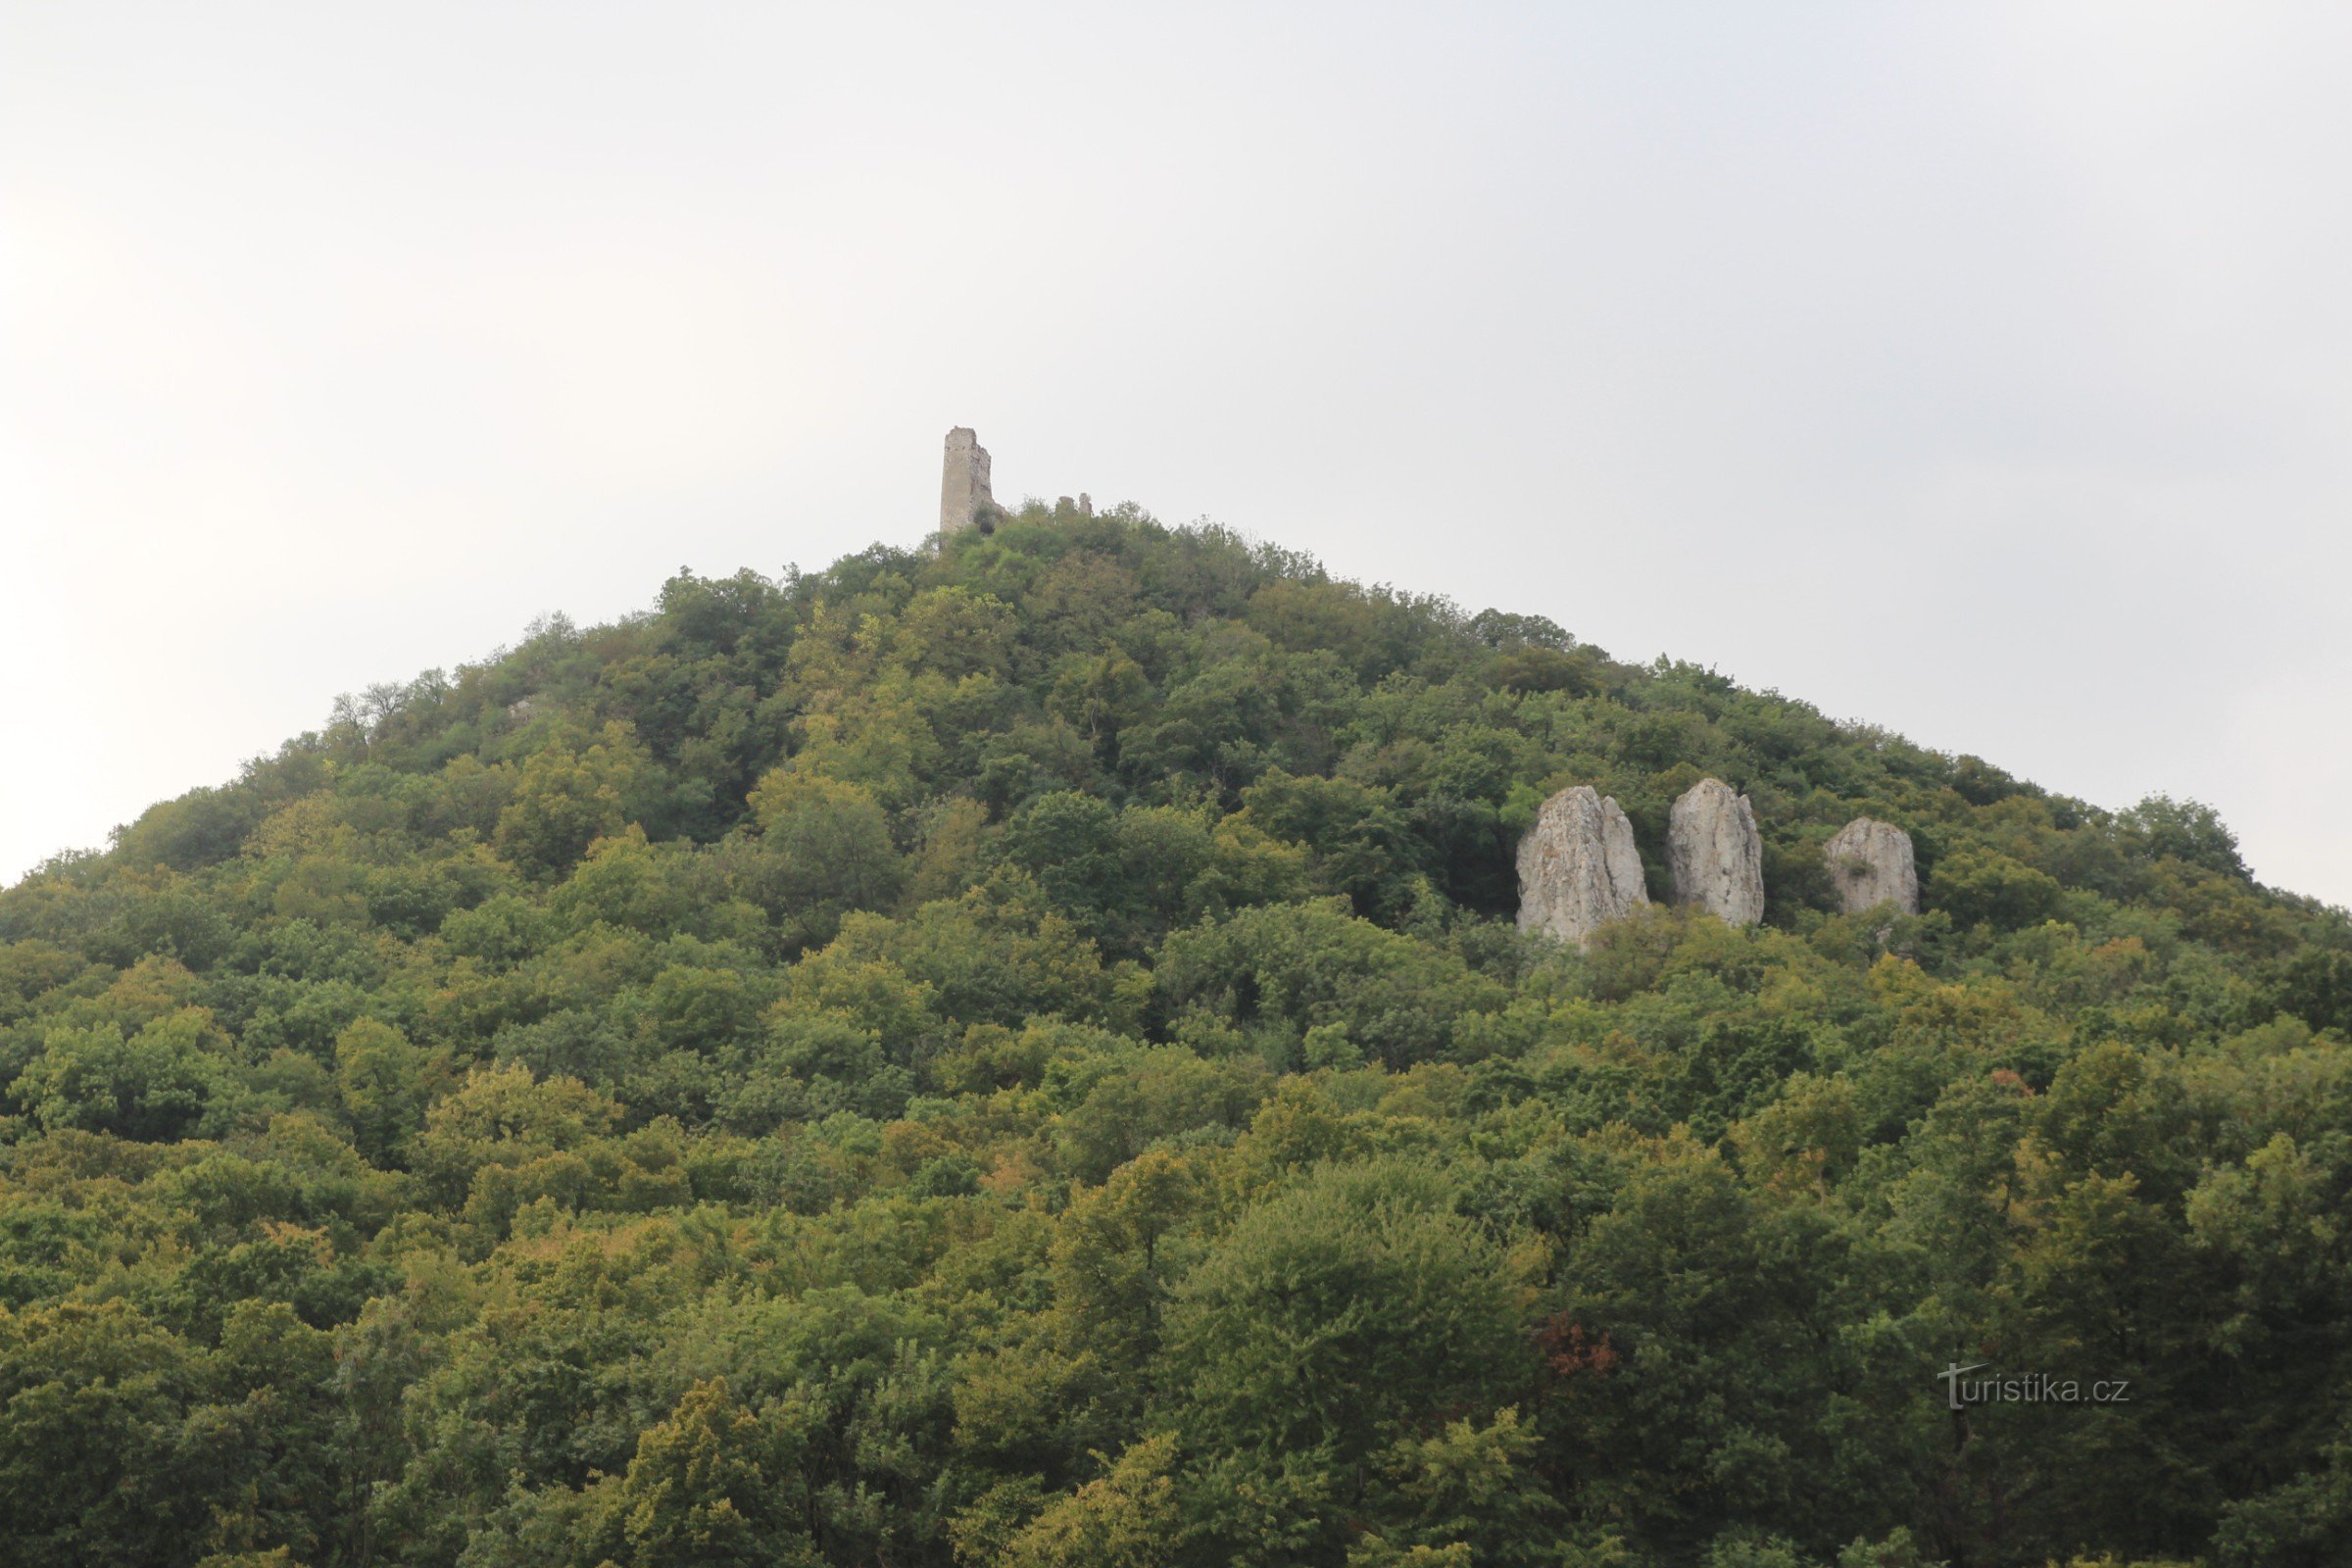 Děvín - formațiunea stâncoasă a celor Trei Fecioare, în vârful căreia se află ruinele Castelului Děvičky